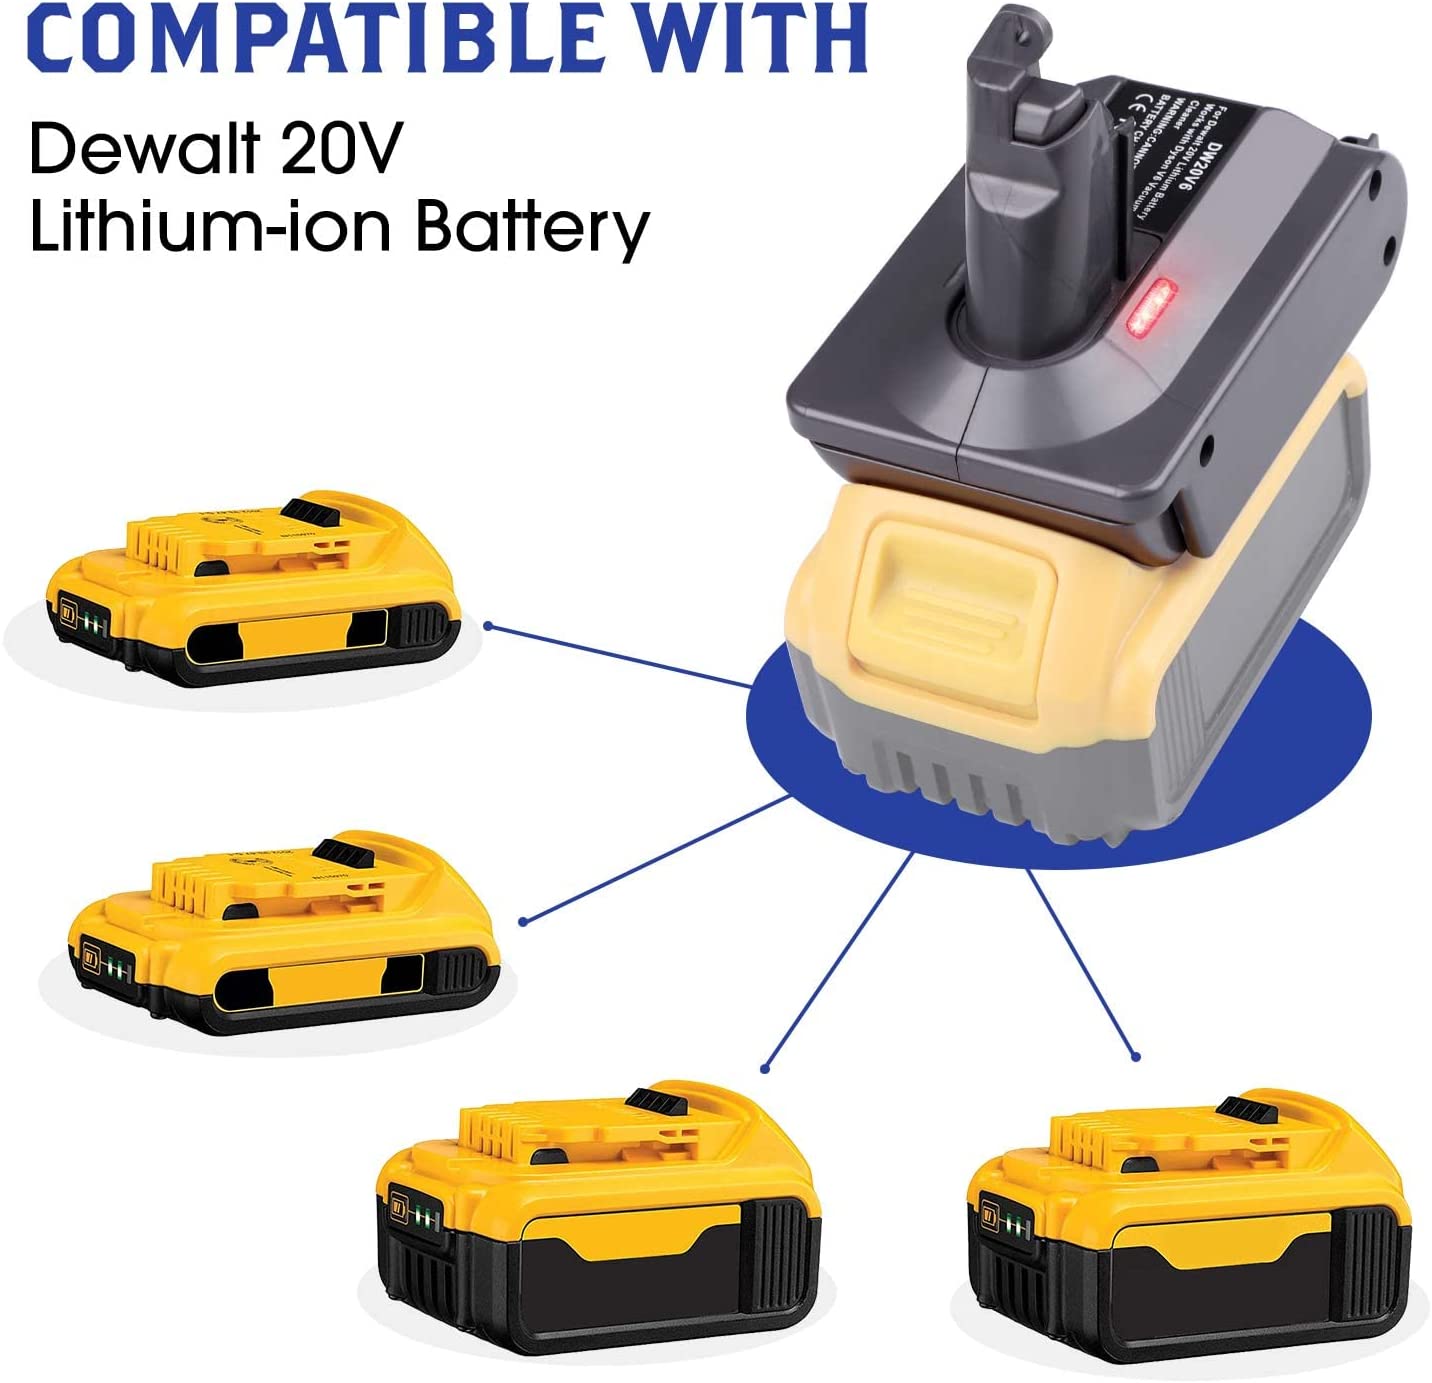 Adaptador de bateria Dyson per a bateria de liti Dewalt 20V convertida a bateria Dyson V7